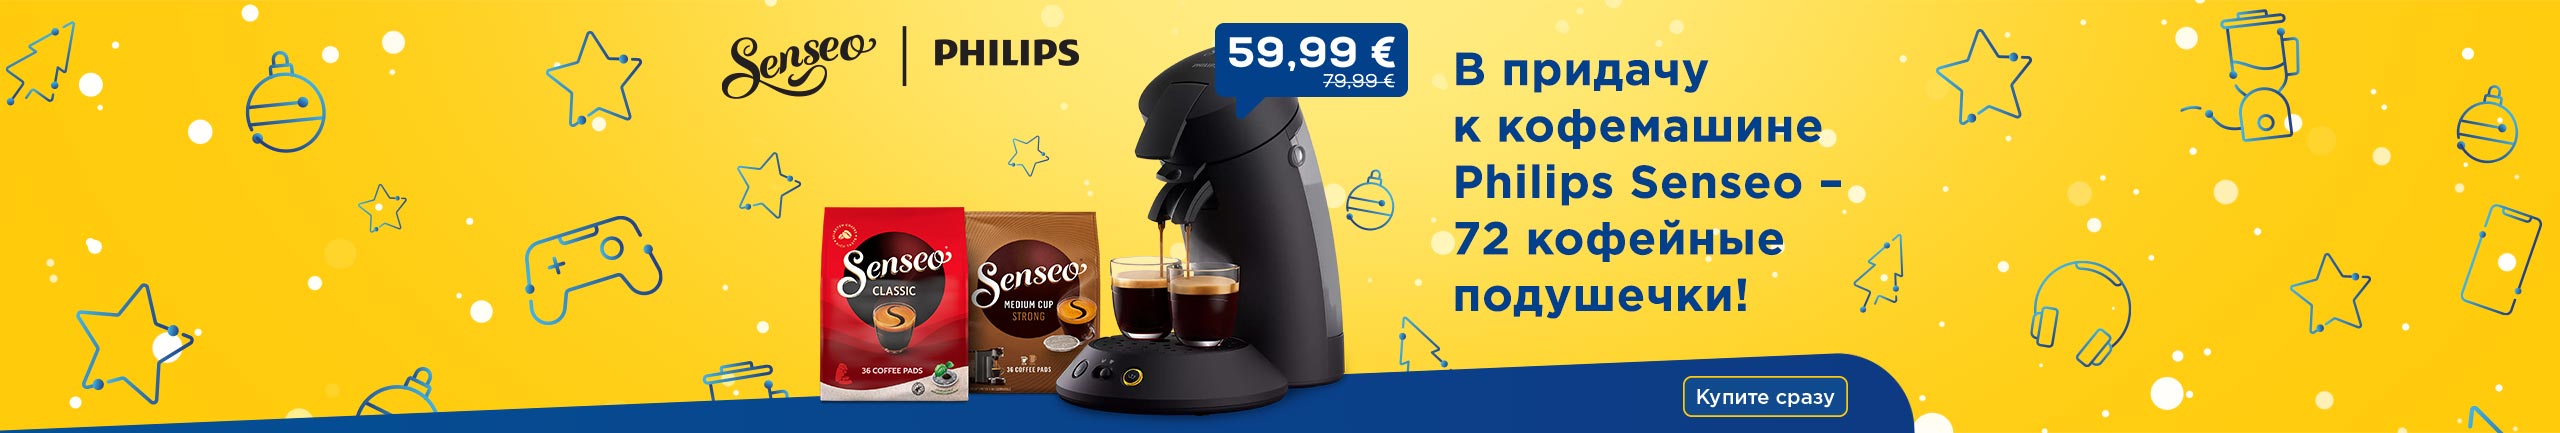 В придачу к кофемашине Philips Senseo – 72 кофейные подушечки!